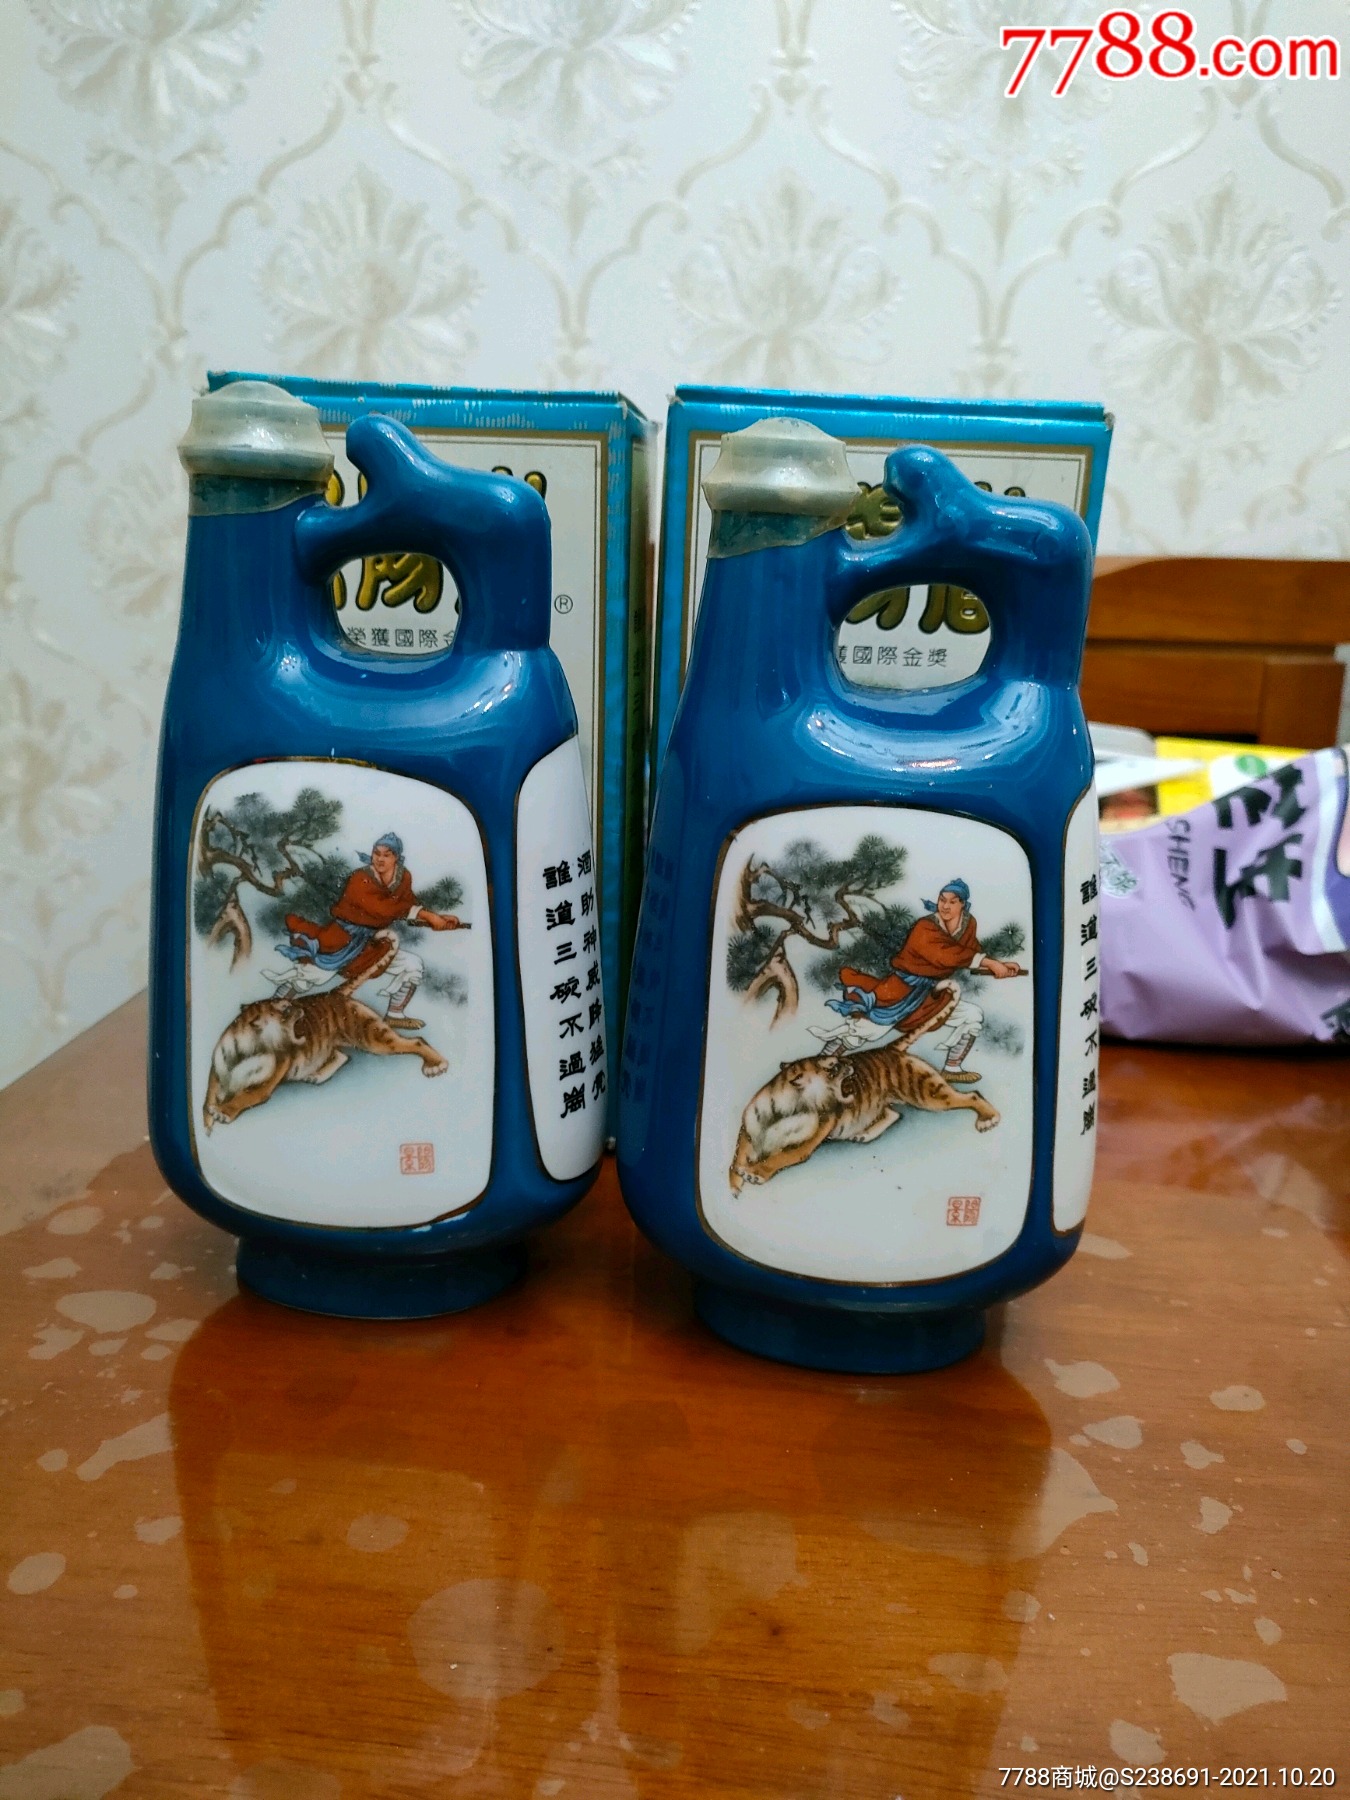 景阳冈酒原料图片